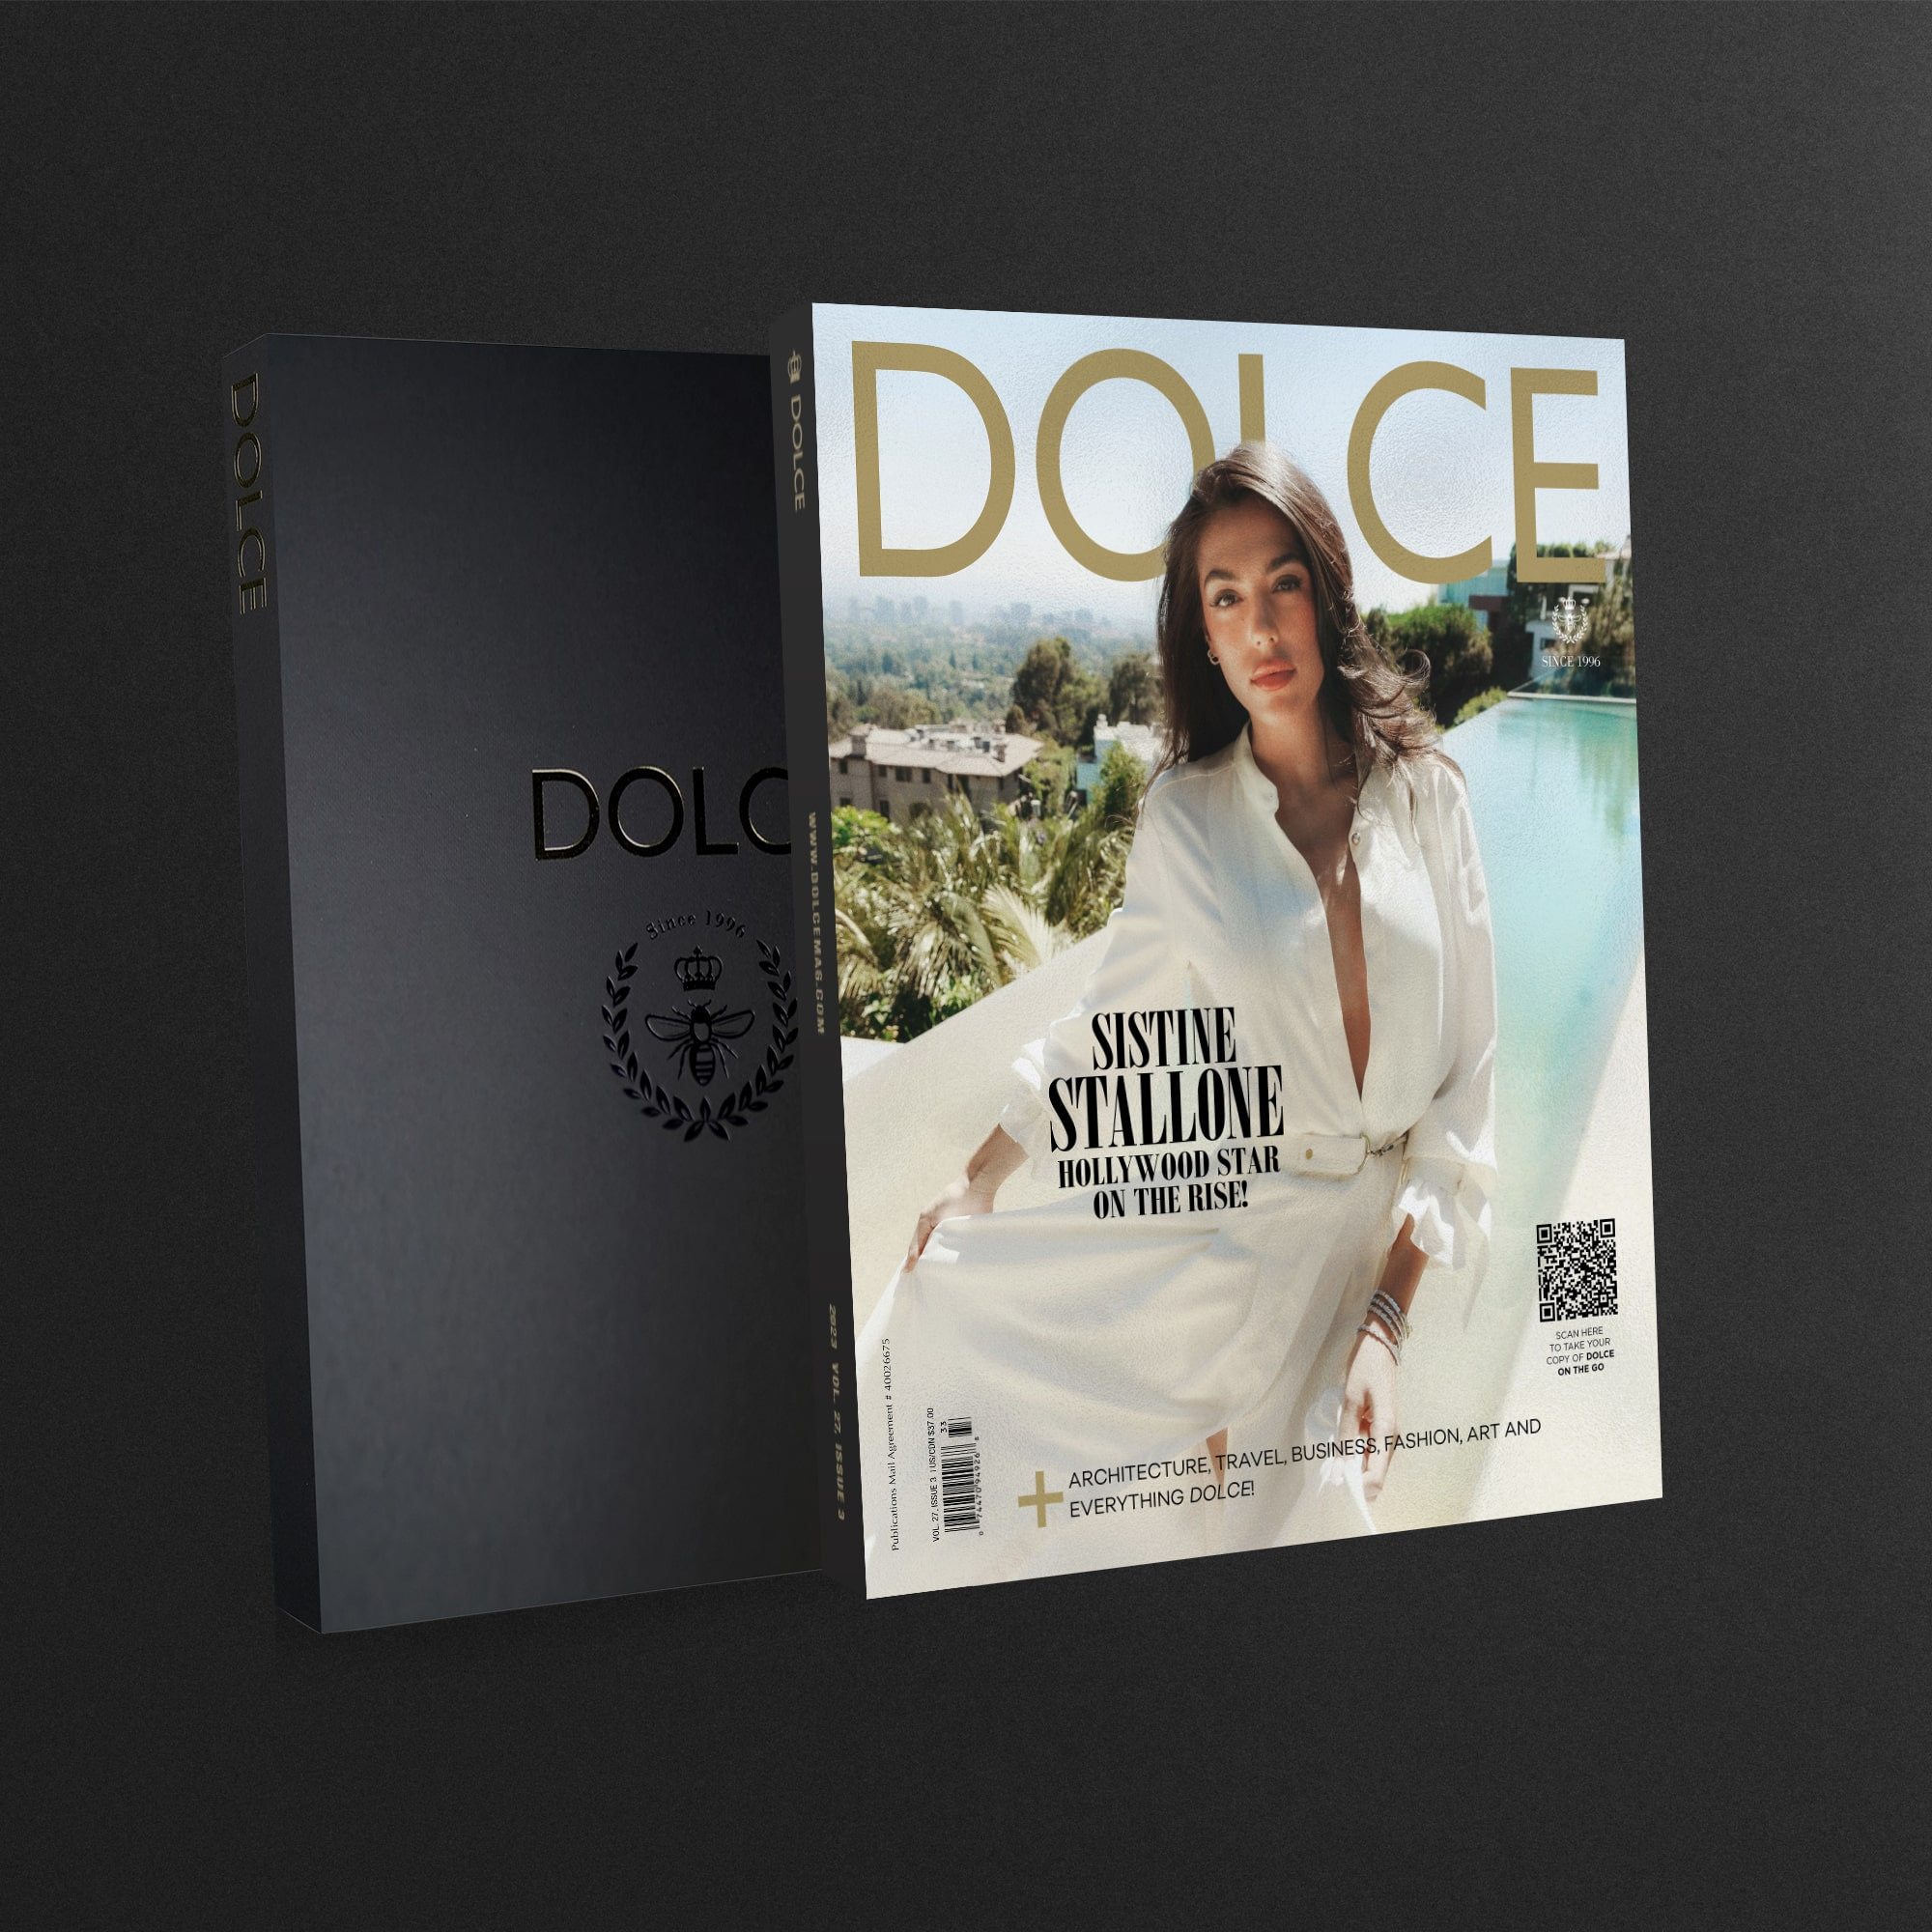 Dolce Publishing